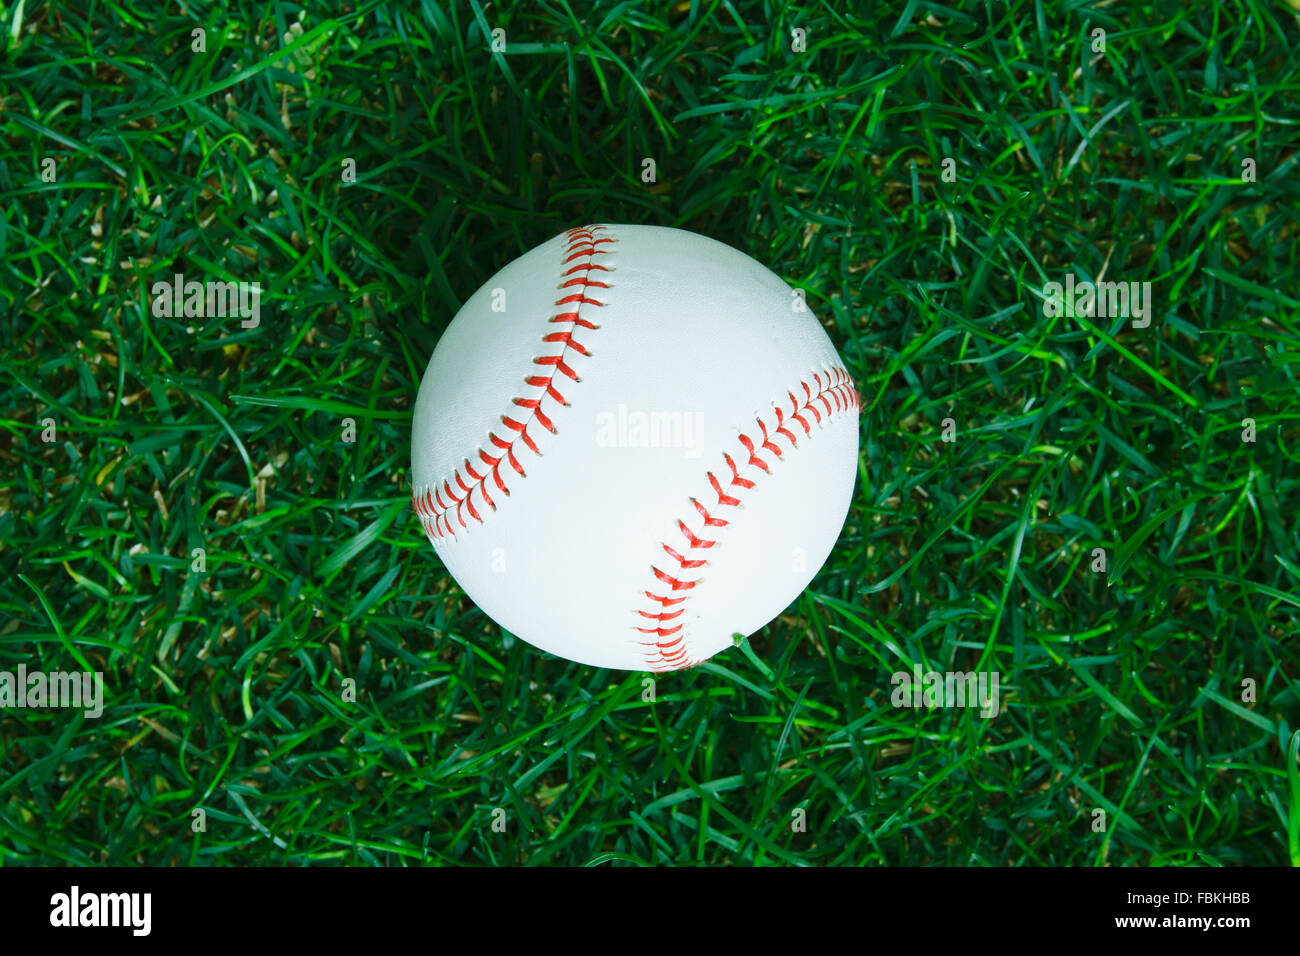 Bola de béisbol sobre el césped Foto de stock